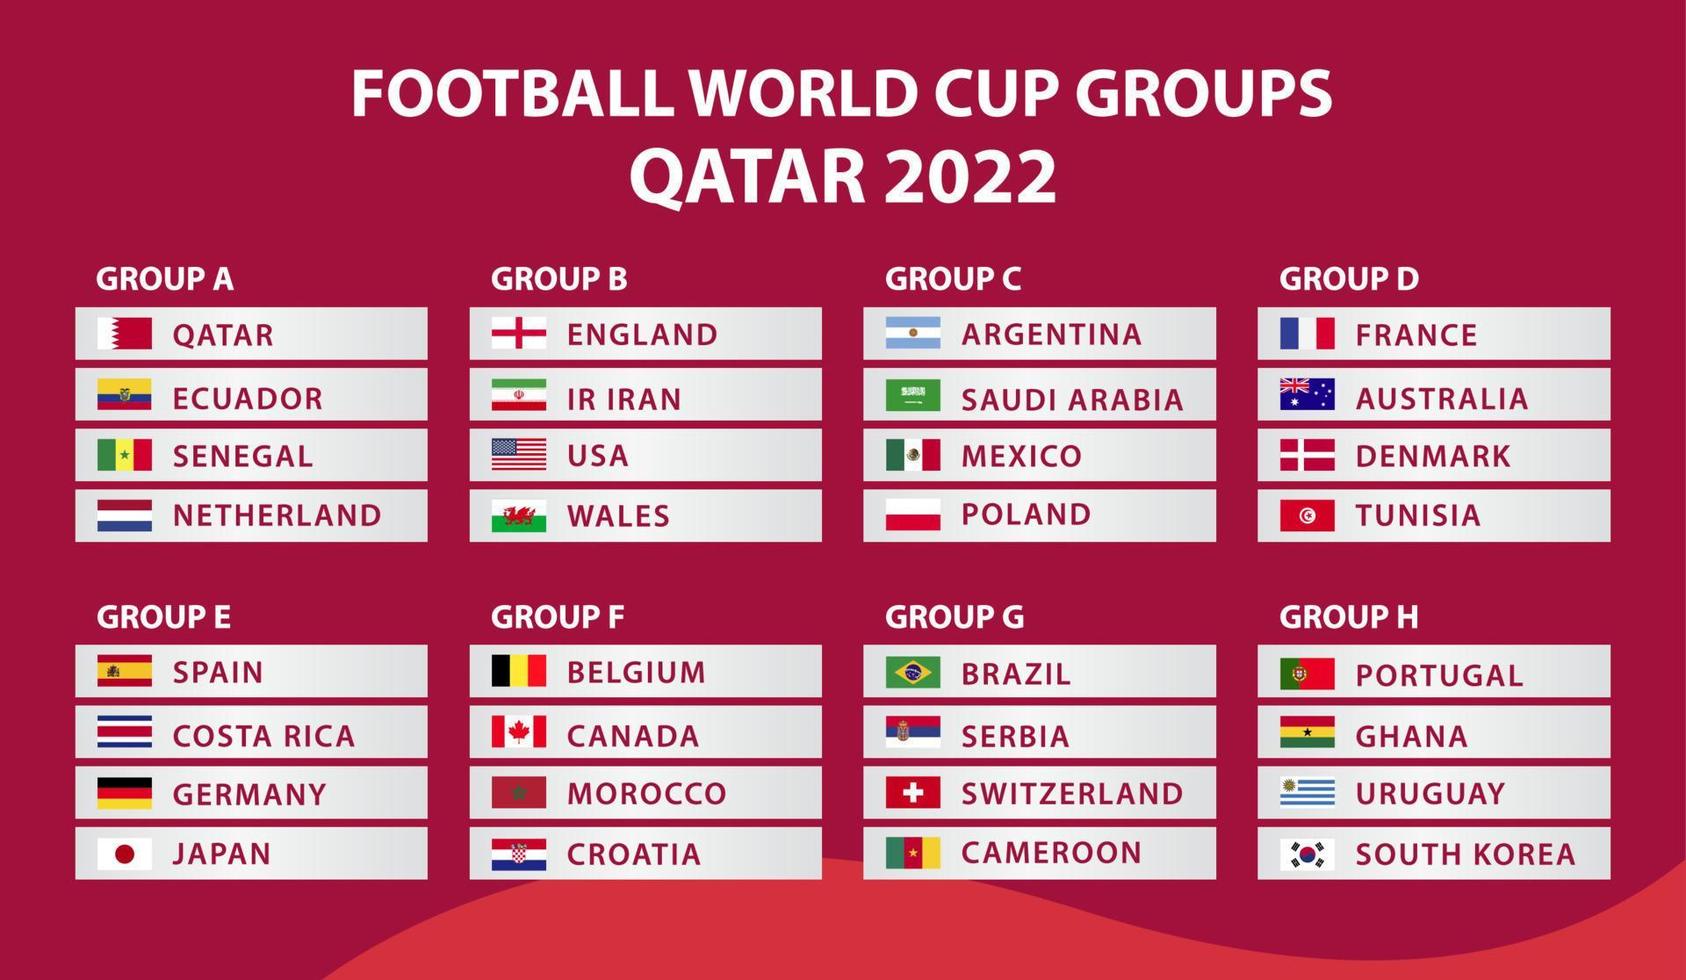 Copa do Mundo FIFA. copa do mundo 2022. modelo de calendário de